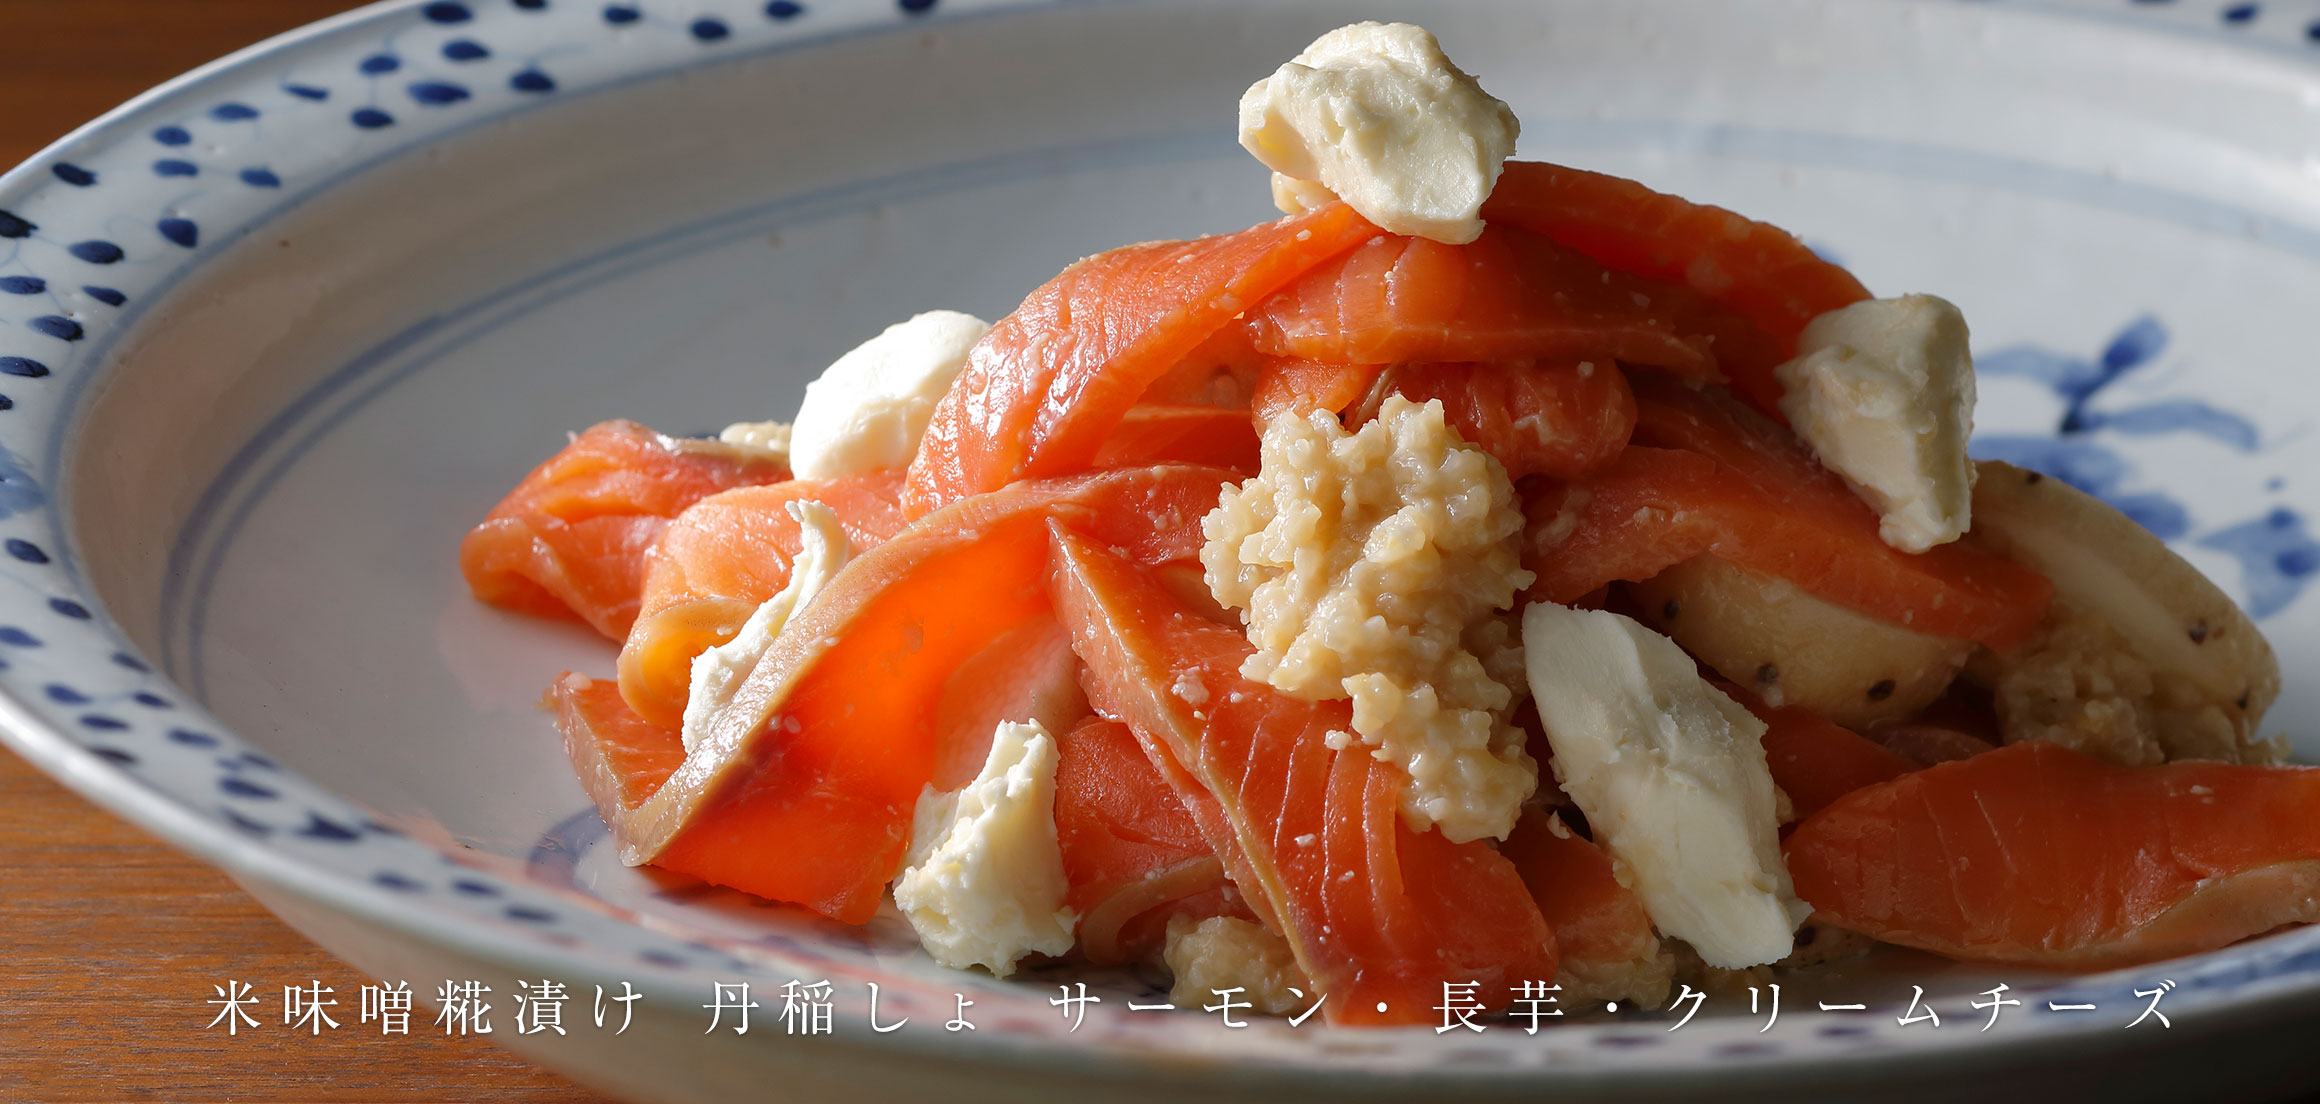 米味噌糀漬け 丹稲しょ サーモン・長芋・クリームチーズ